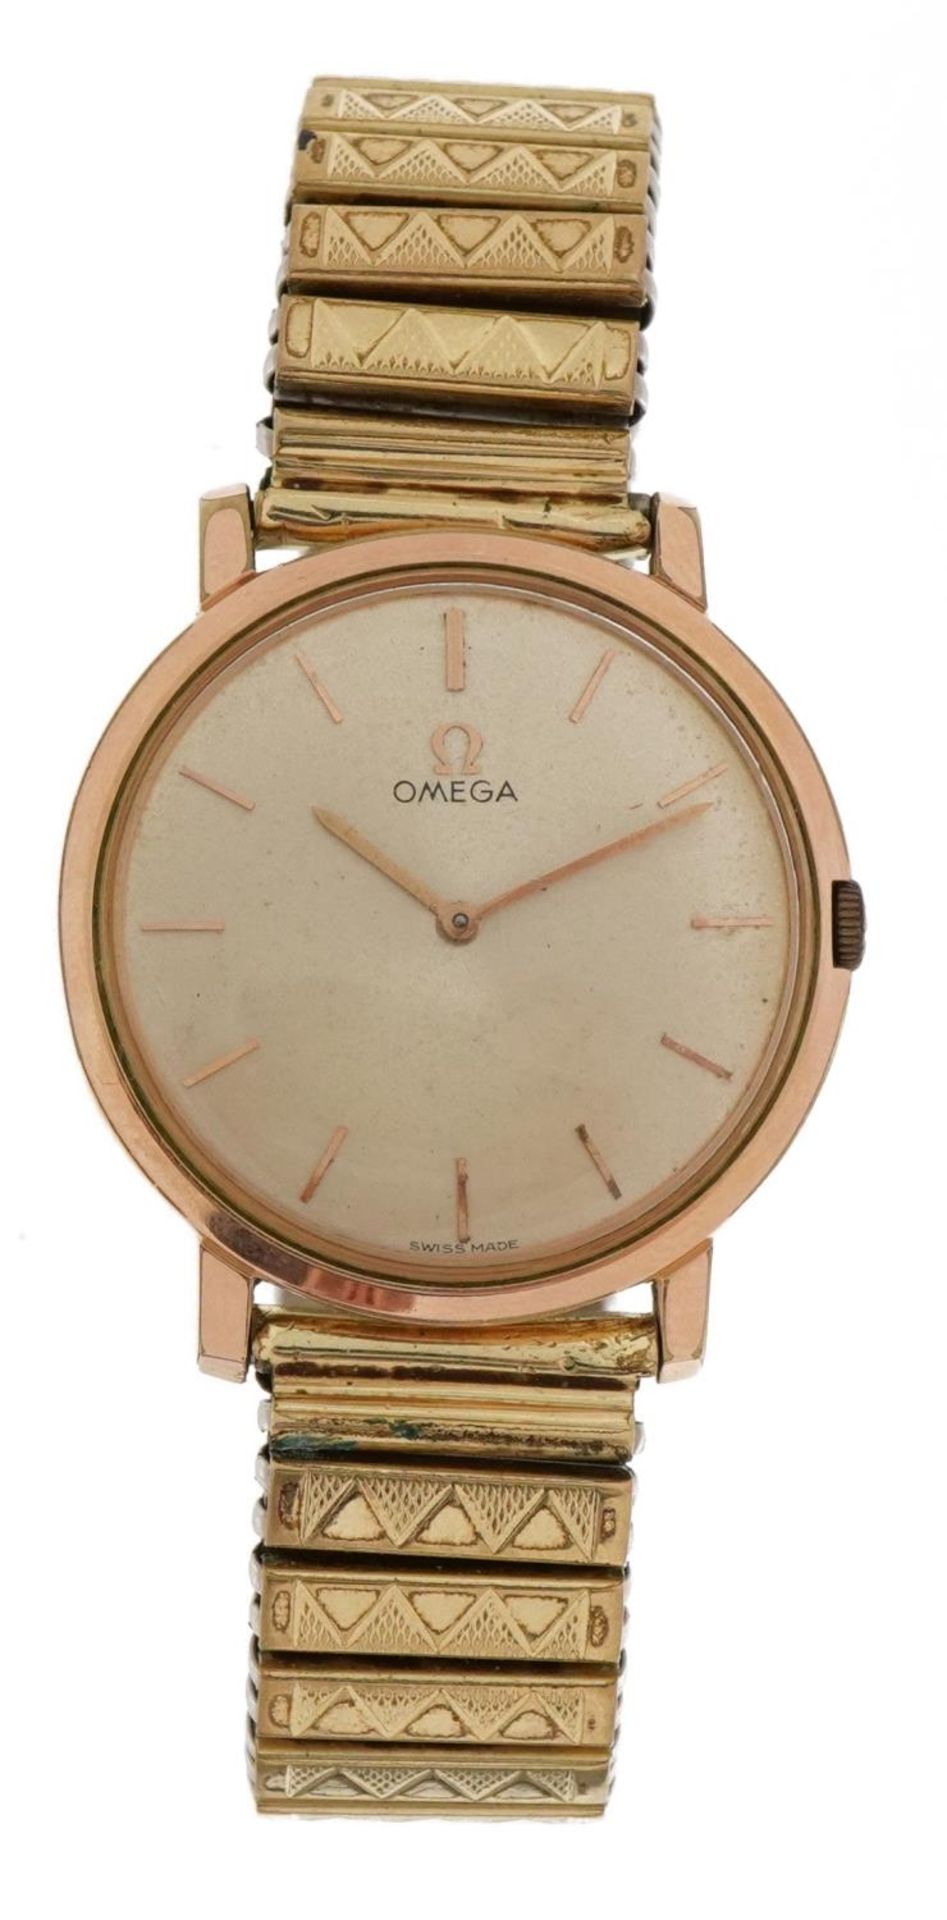 Omega, gentlemen's wristwatch, the case 30mm in diameter - Image 2 of 4